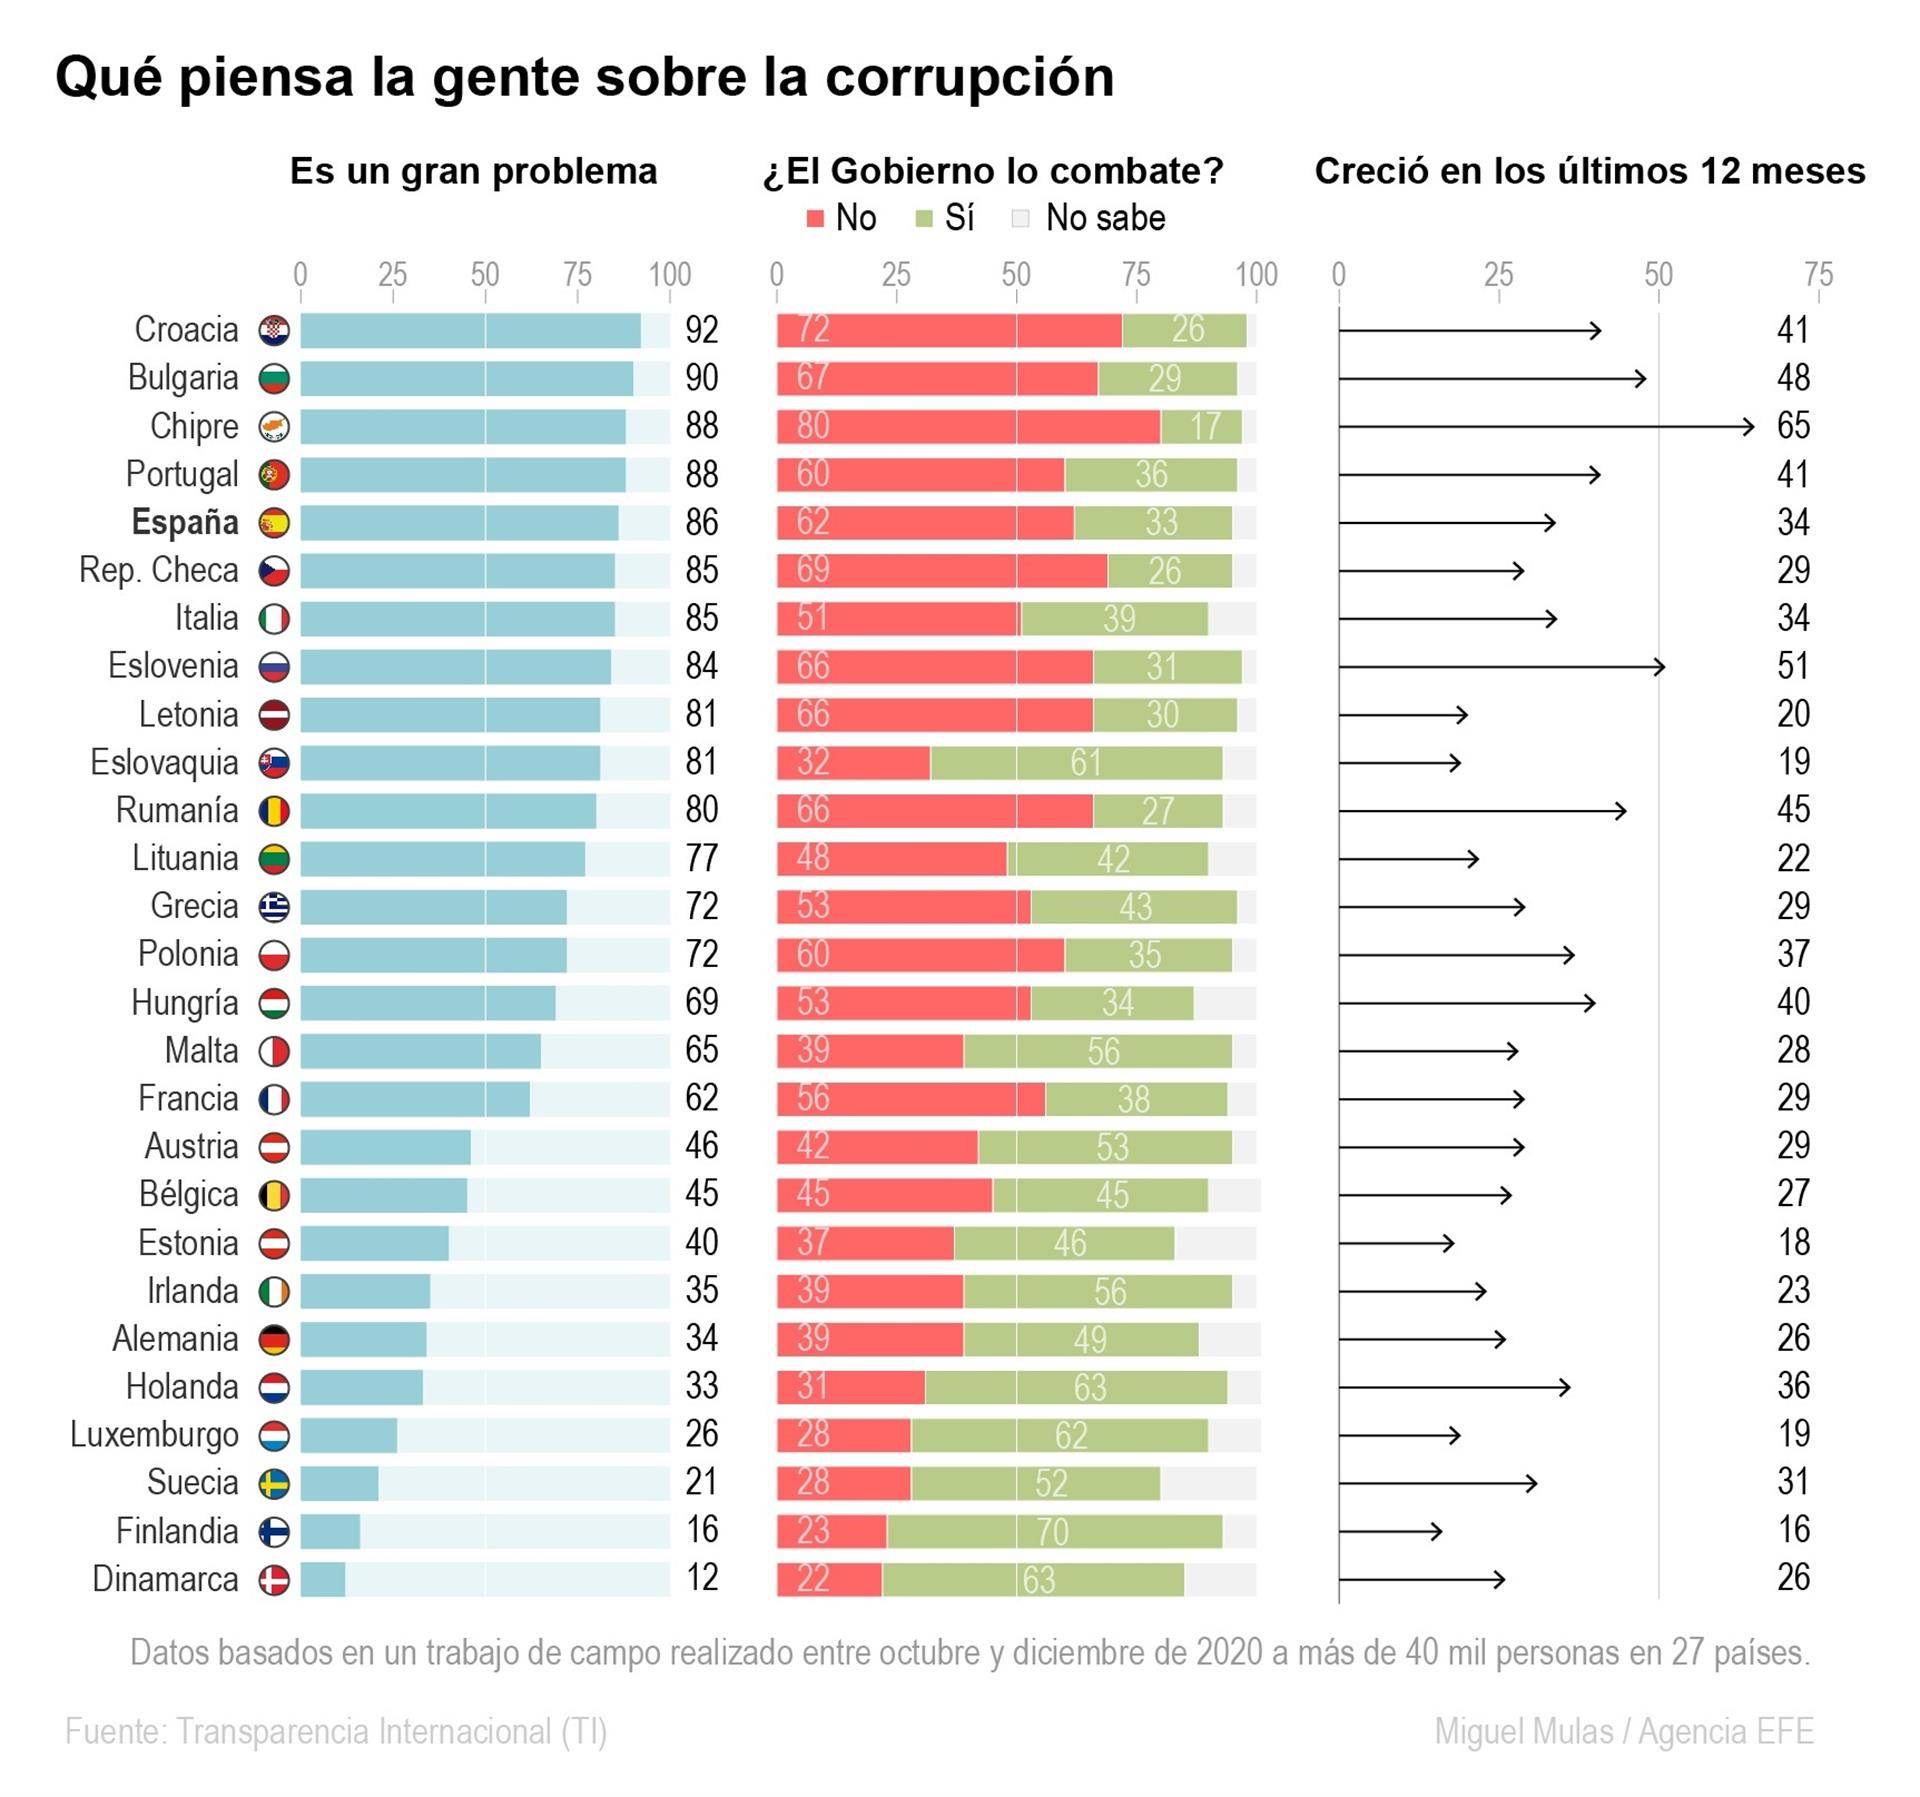 El 62 % de la UE ve la corrupción como un gran problema en su país